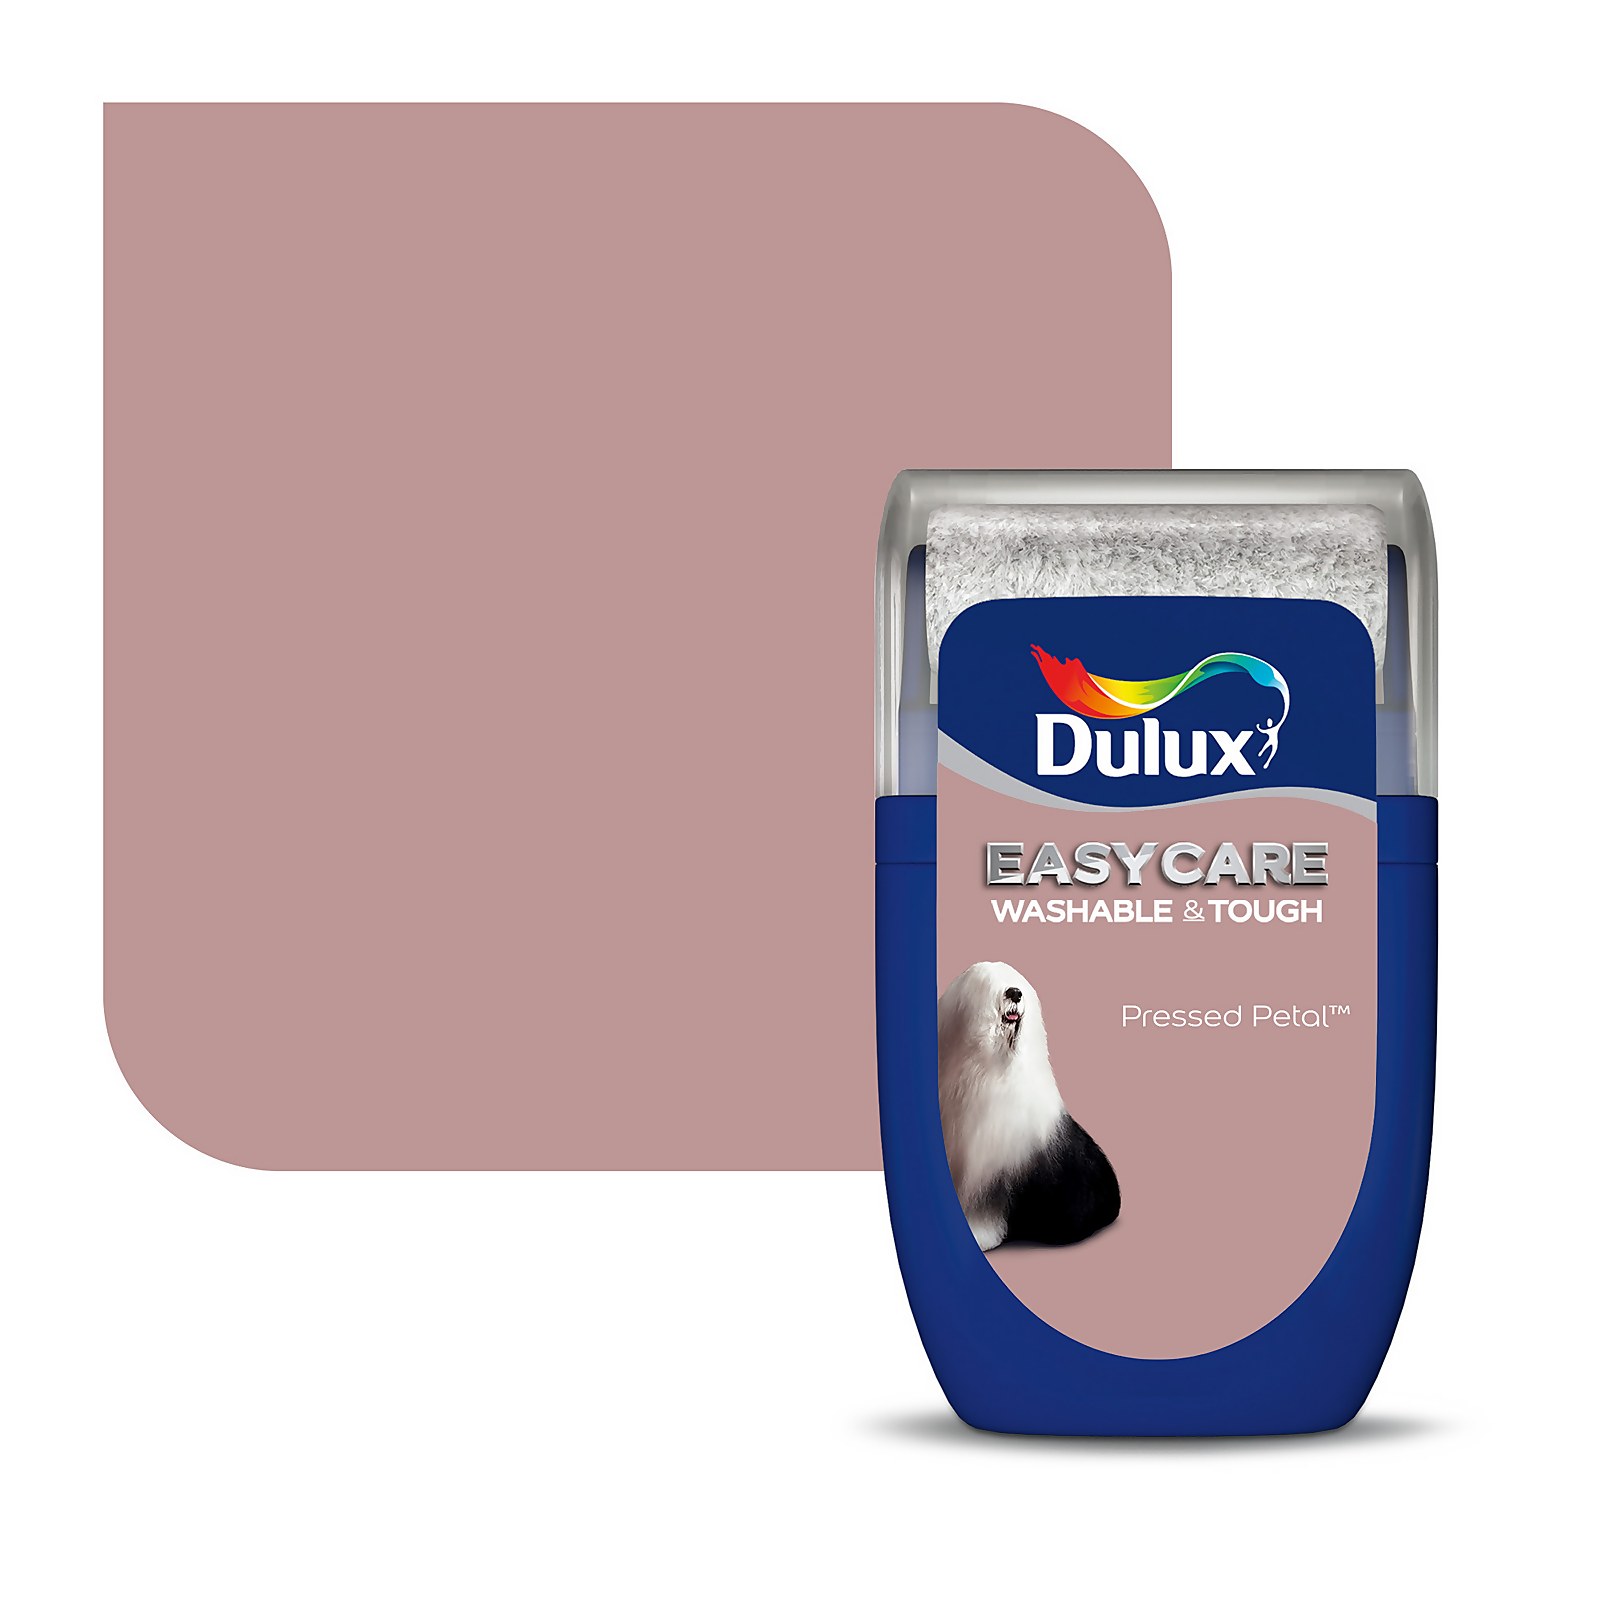 Dulux Easycare Washable & Tough Paint Pressed Petal - Tester 30ml